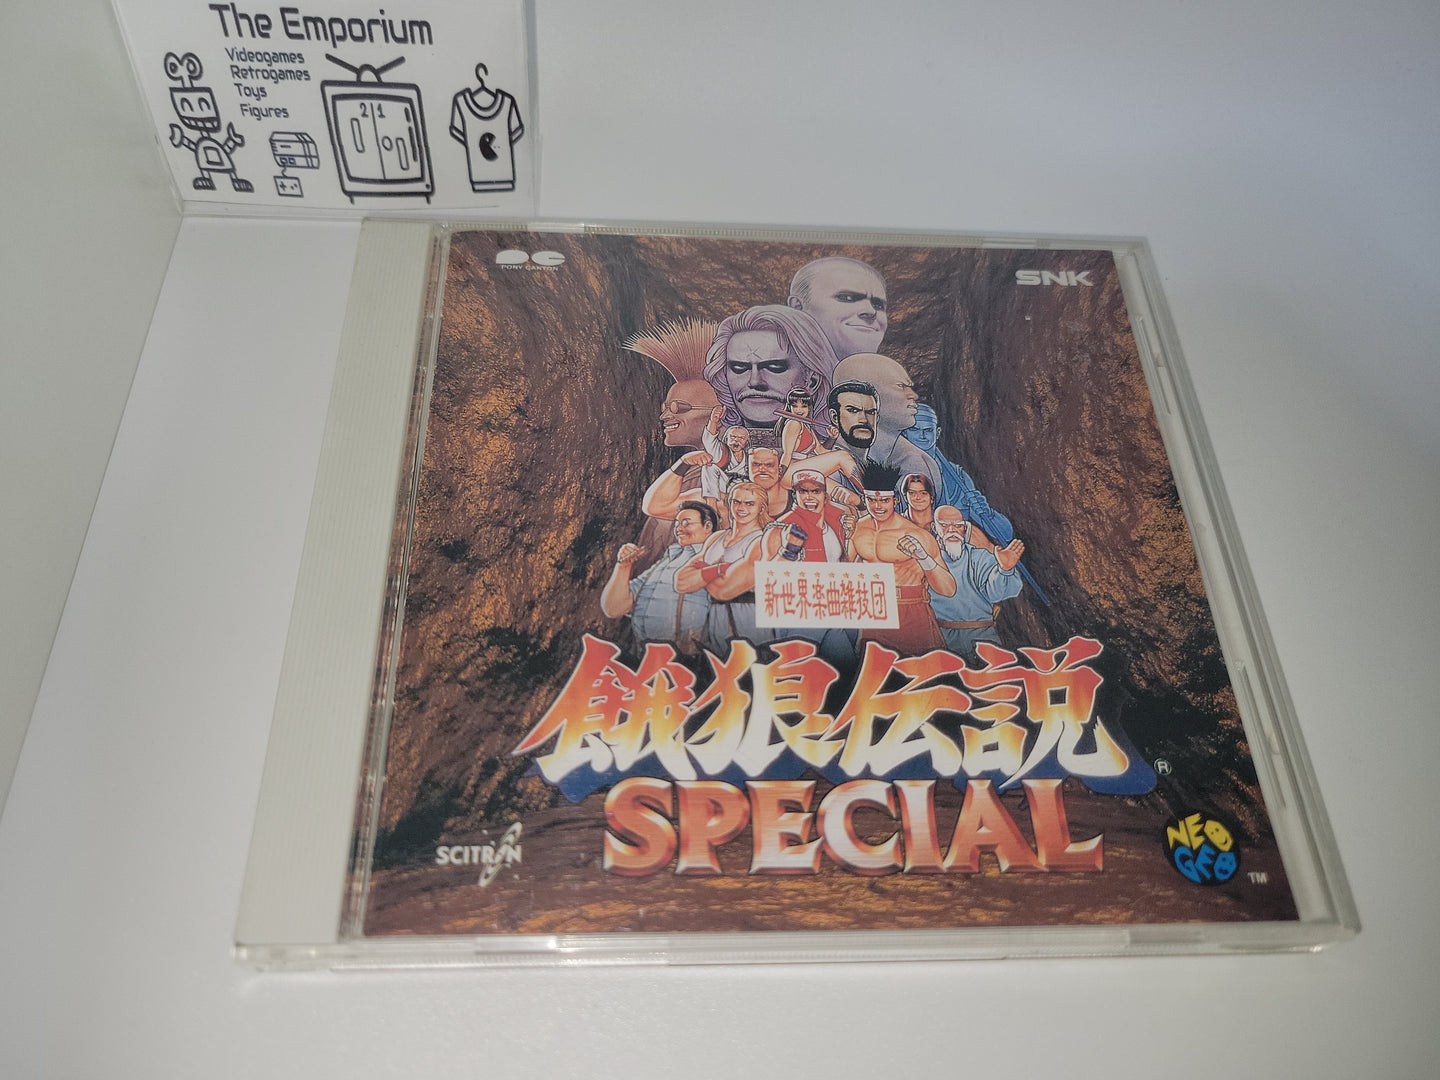 Garou Densetsu SPECIAL - Music cd soundtrack